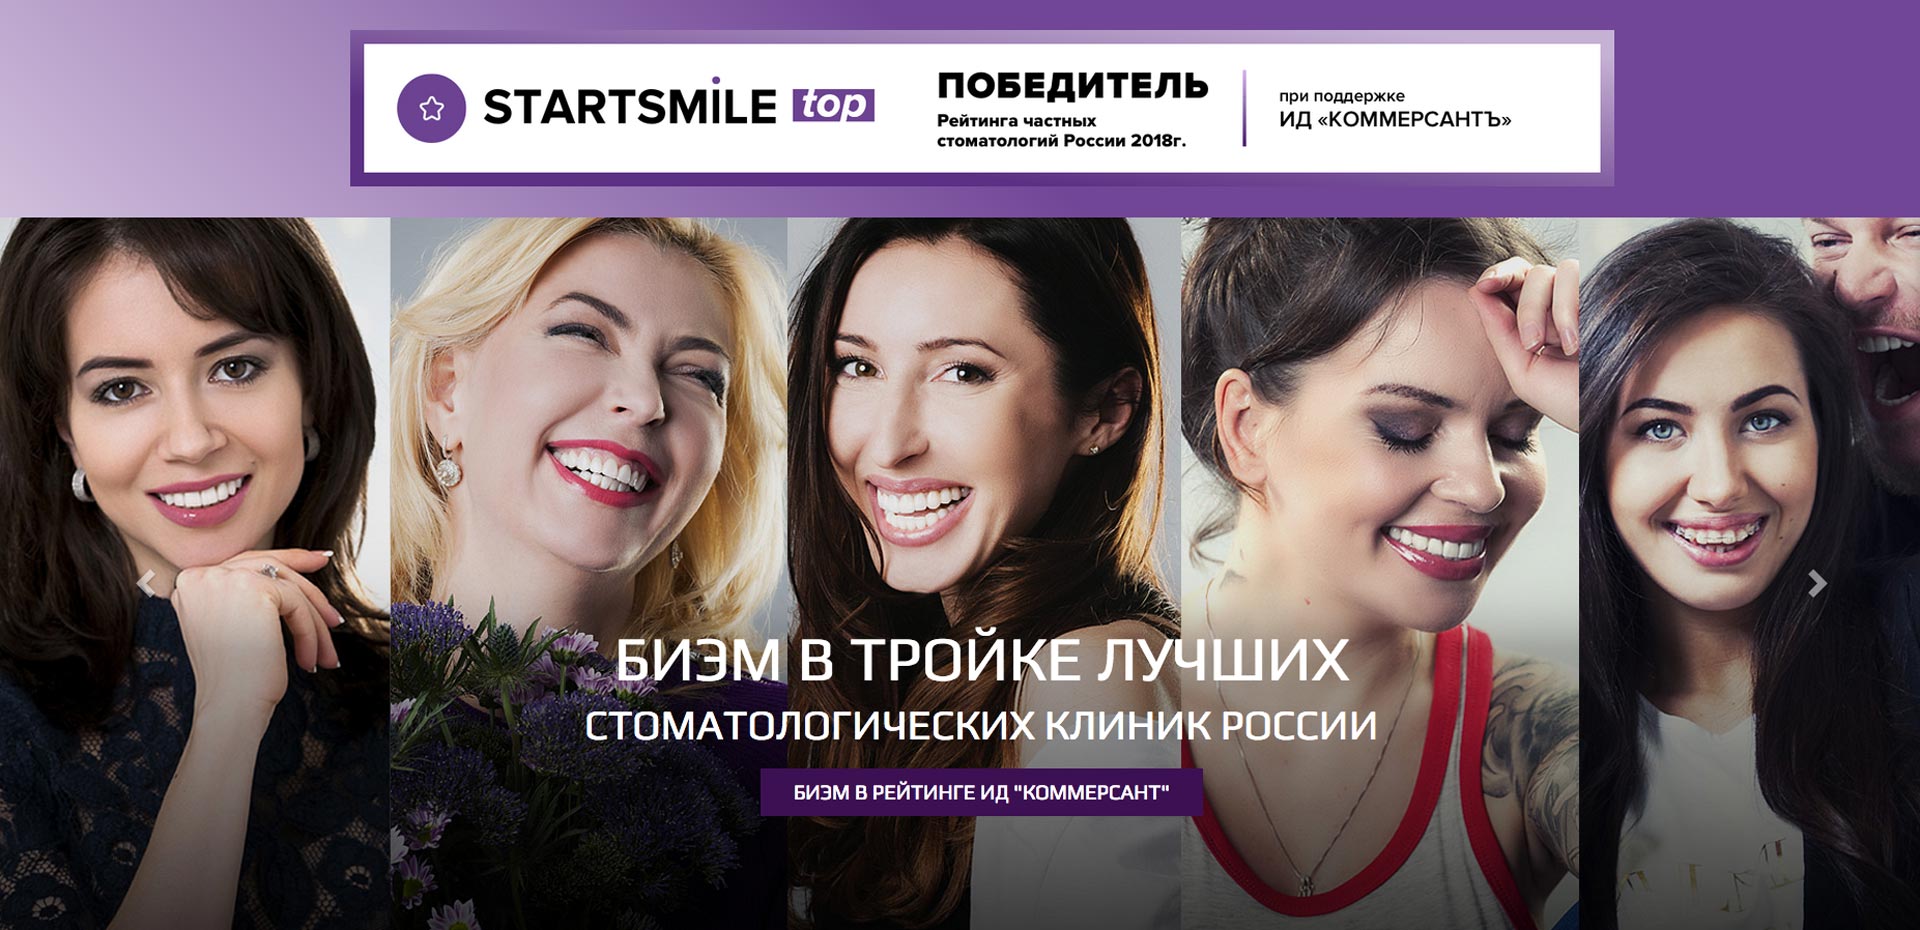 БИЭМ в тройке лучших стоматологических клиник России